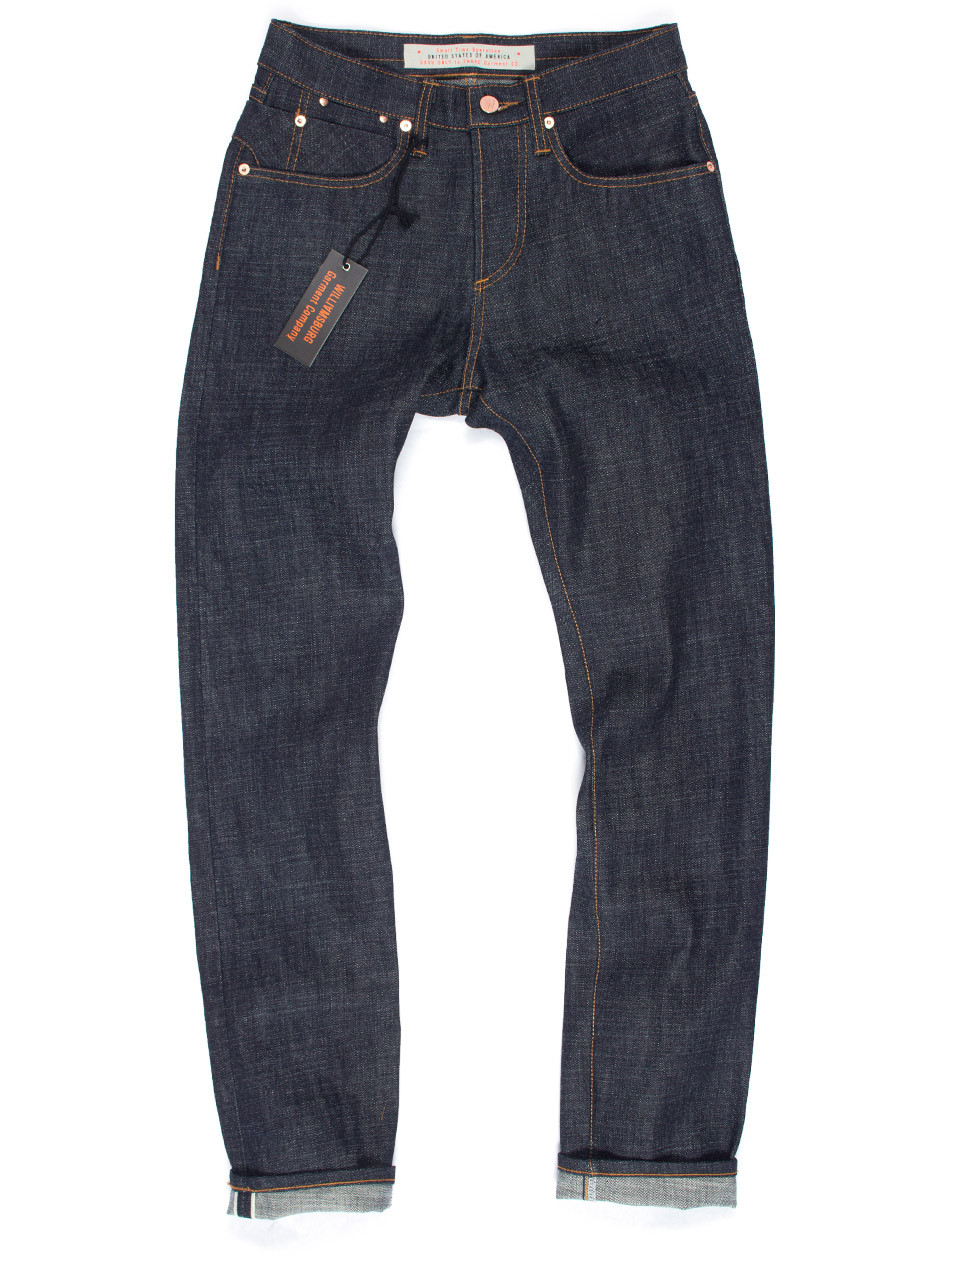 Women's Selvedge Denim Custom Made Jeans | Williamsburg Garment Co.